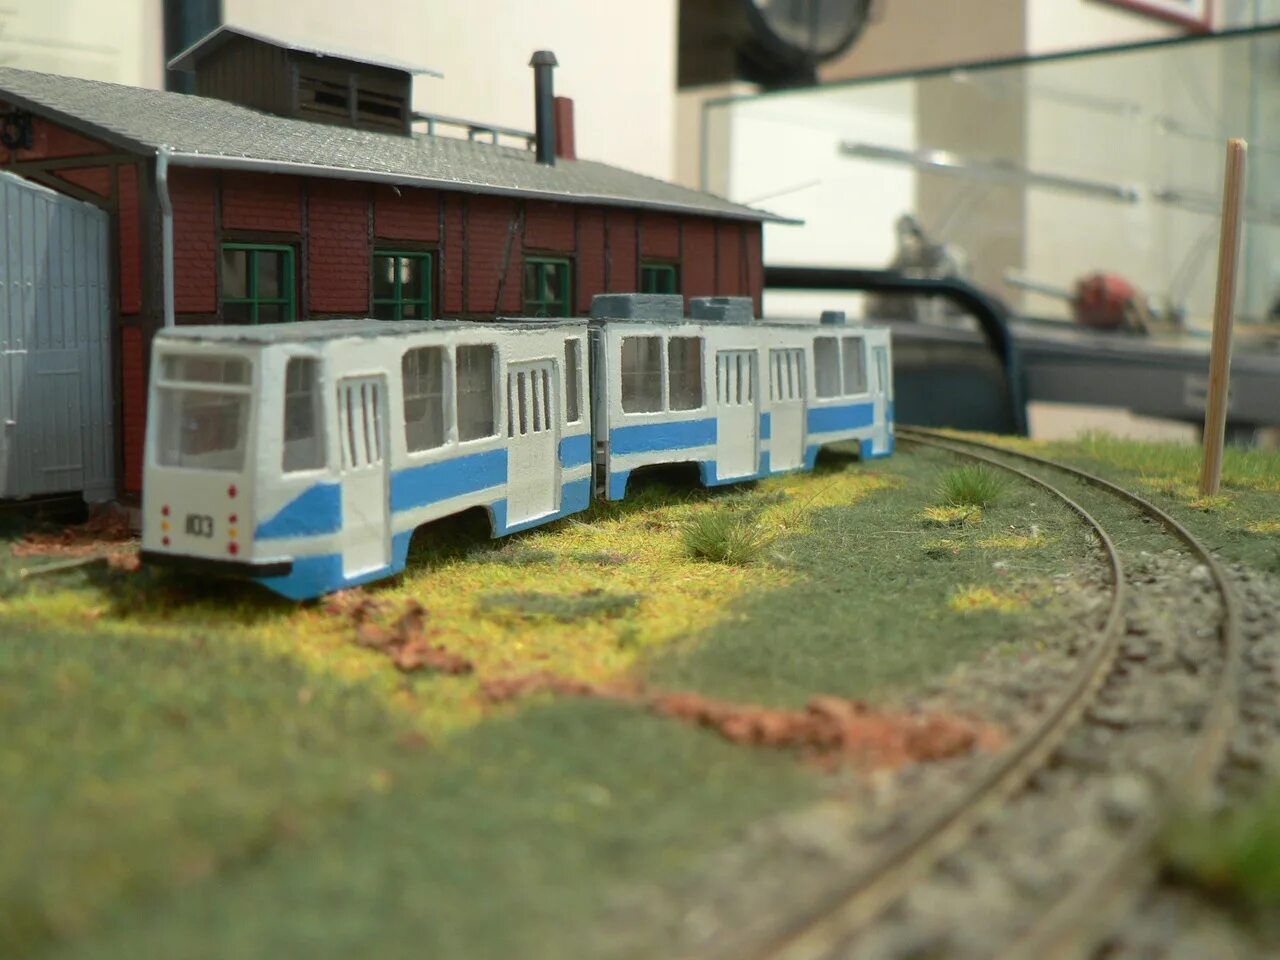 Дома 1 43. Модель трамвая. Модель трамвая для железной дороги. Модели трамваев 1 43. Модель старинного трамвая.